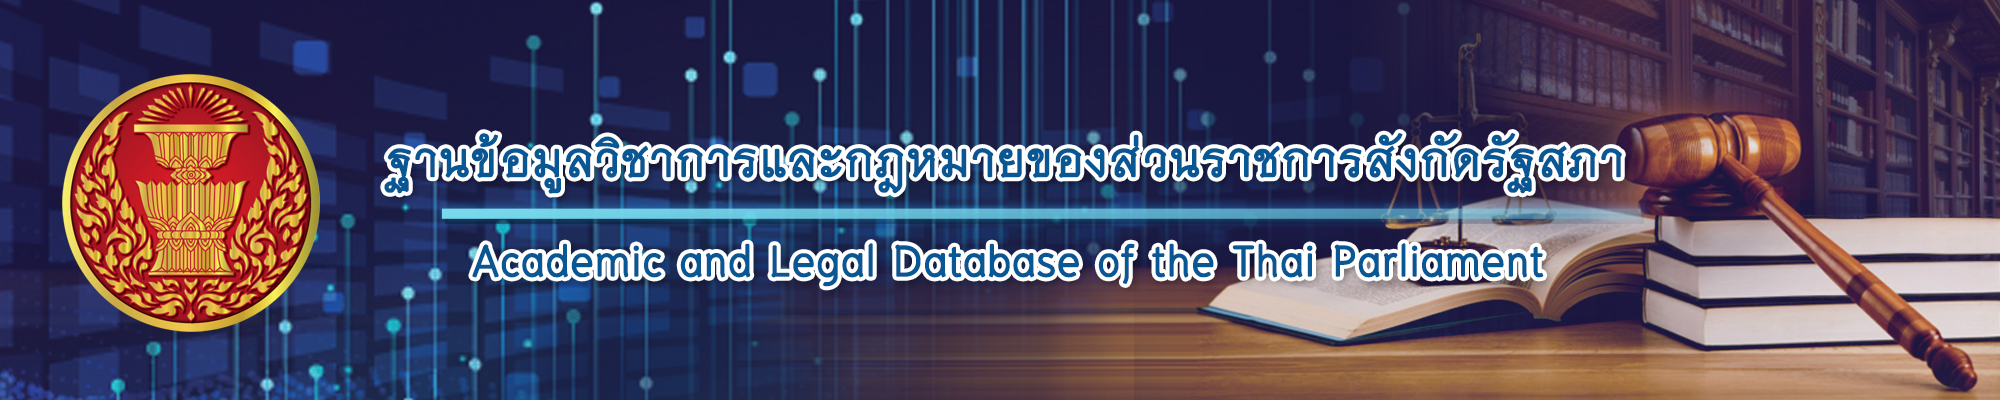 ฐานข้อมูลวิชาการและกฎหมายของส่วนราชการสังกัดรัฐสภา Academic and Legal Database of the Thai Parliament